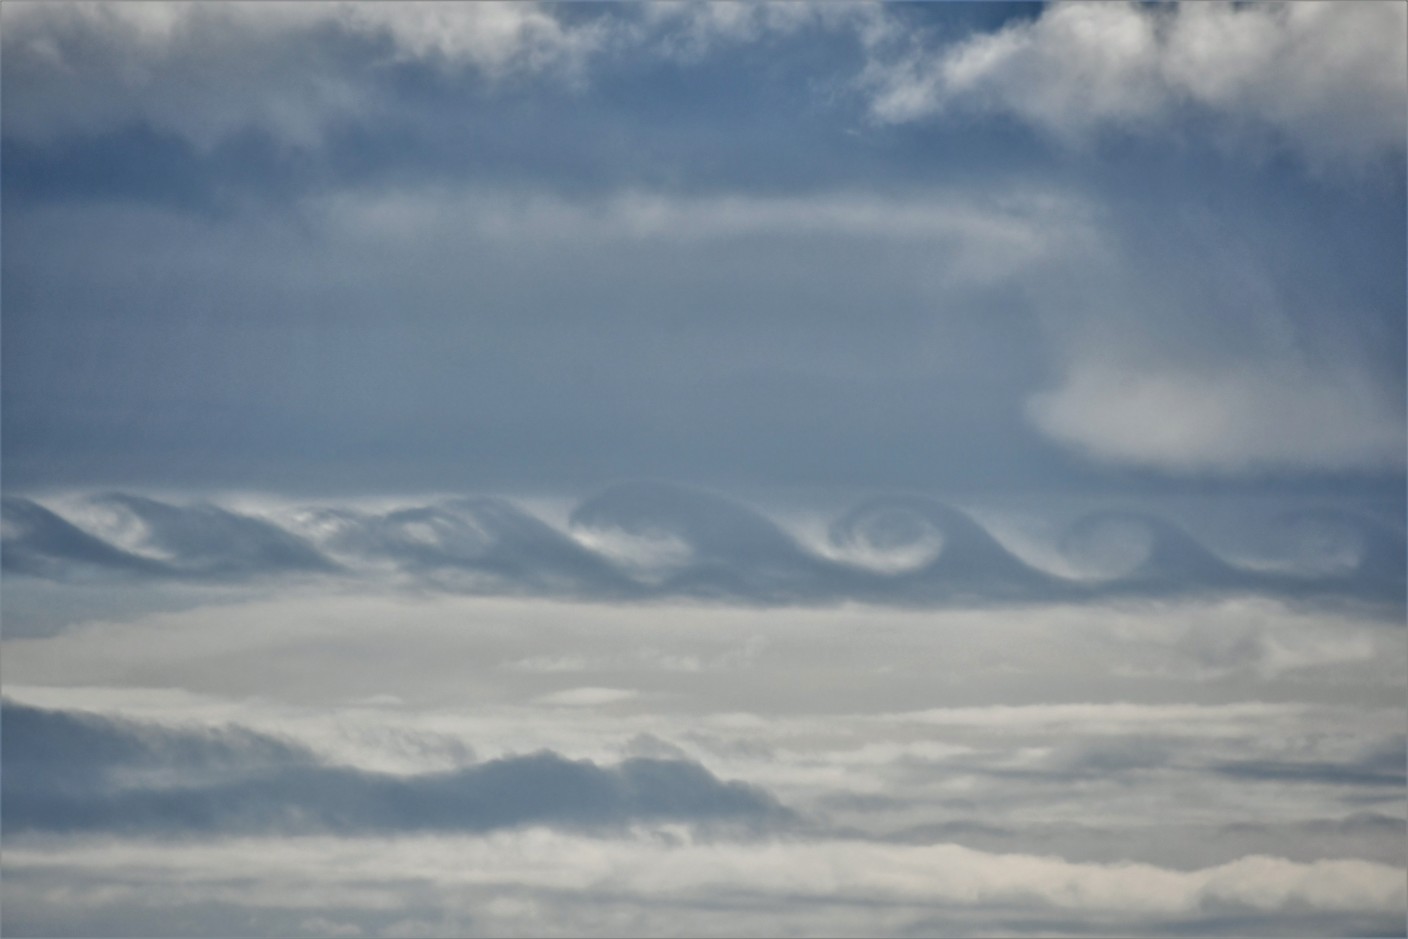 Foto gemaakt door Sytse Schoustra - Terschelling - De Kelvin-Helmholtz wolken boven Terschelling, nu van iets dichterbij.